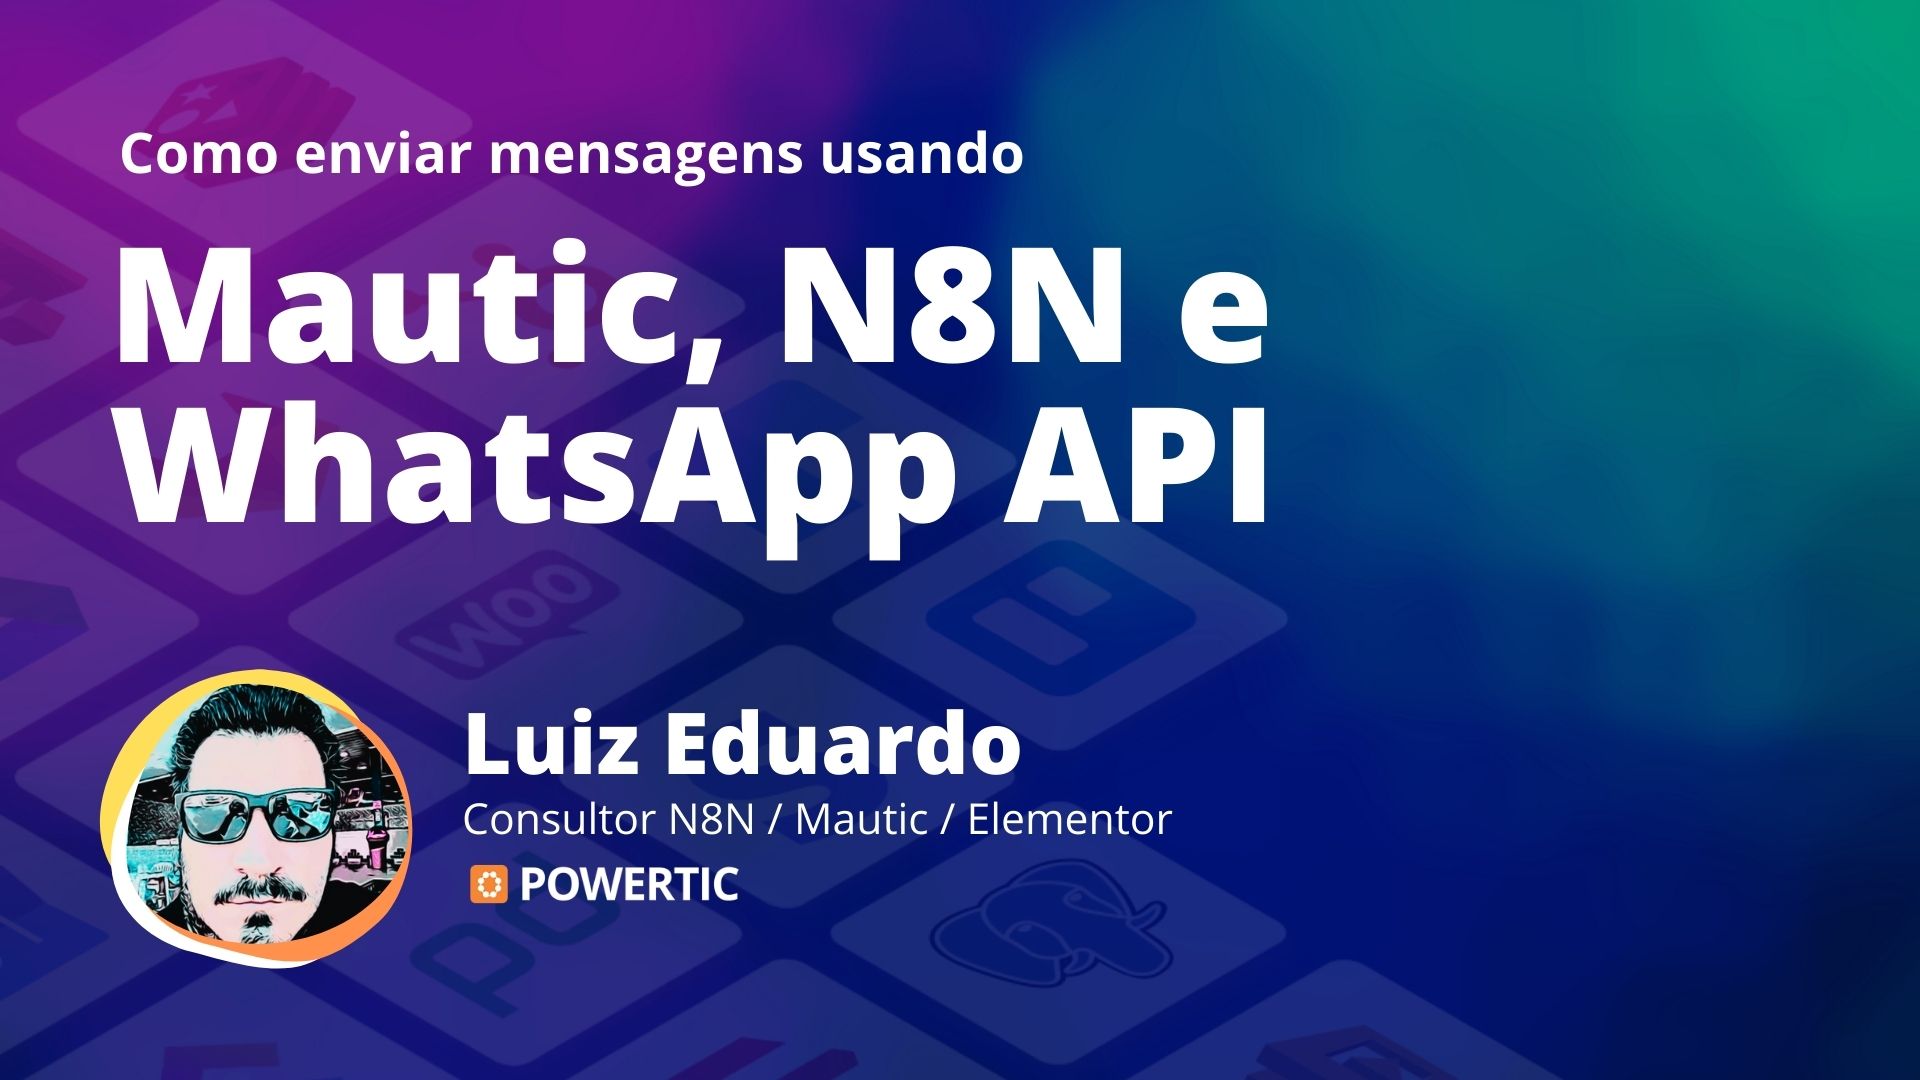 Webinar: Mautic, N8N e WhatsApp Business Cloud API